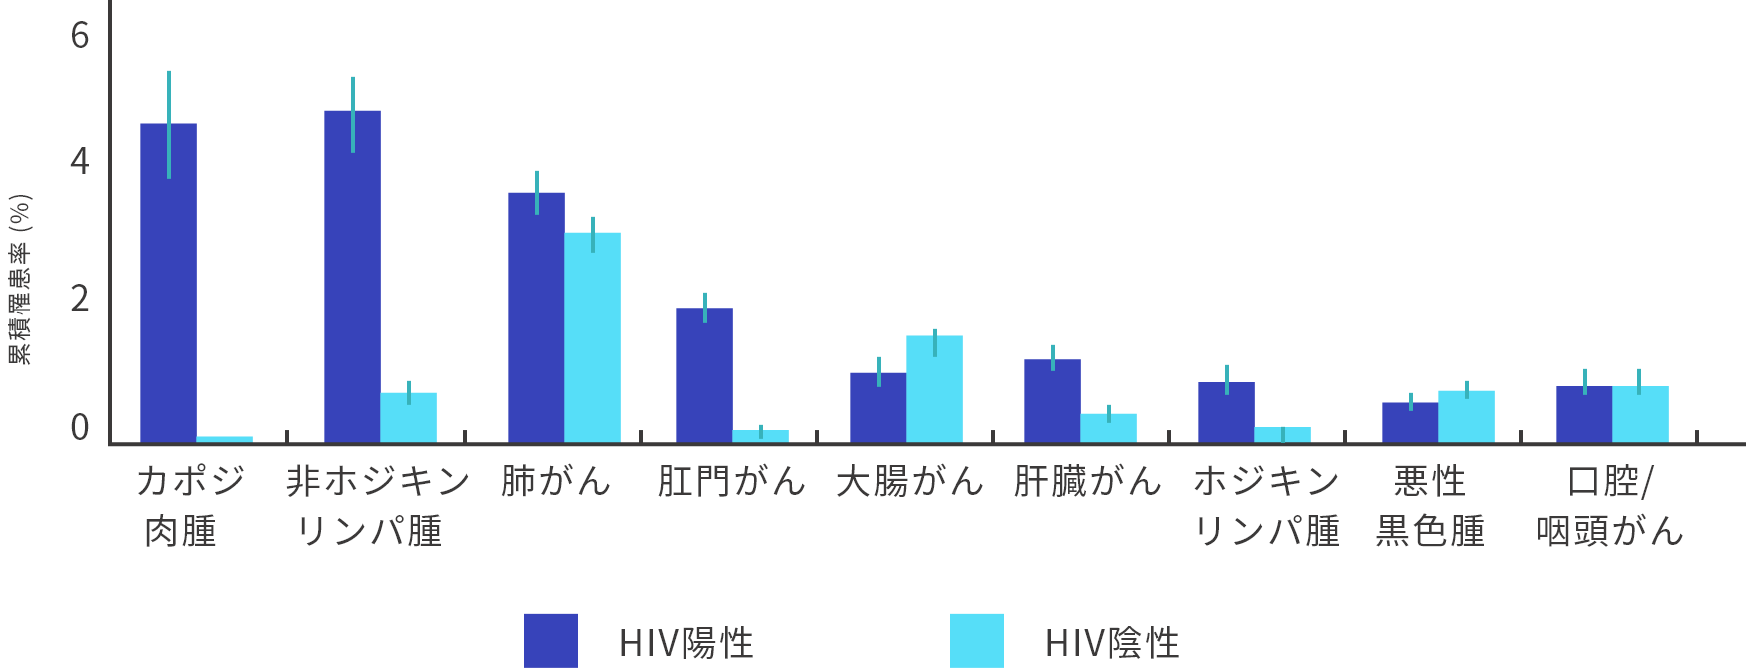 成人のHIV陽性86,620人およびHIV陰性196,987人における調査